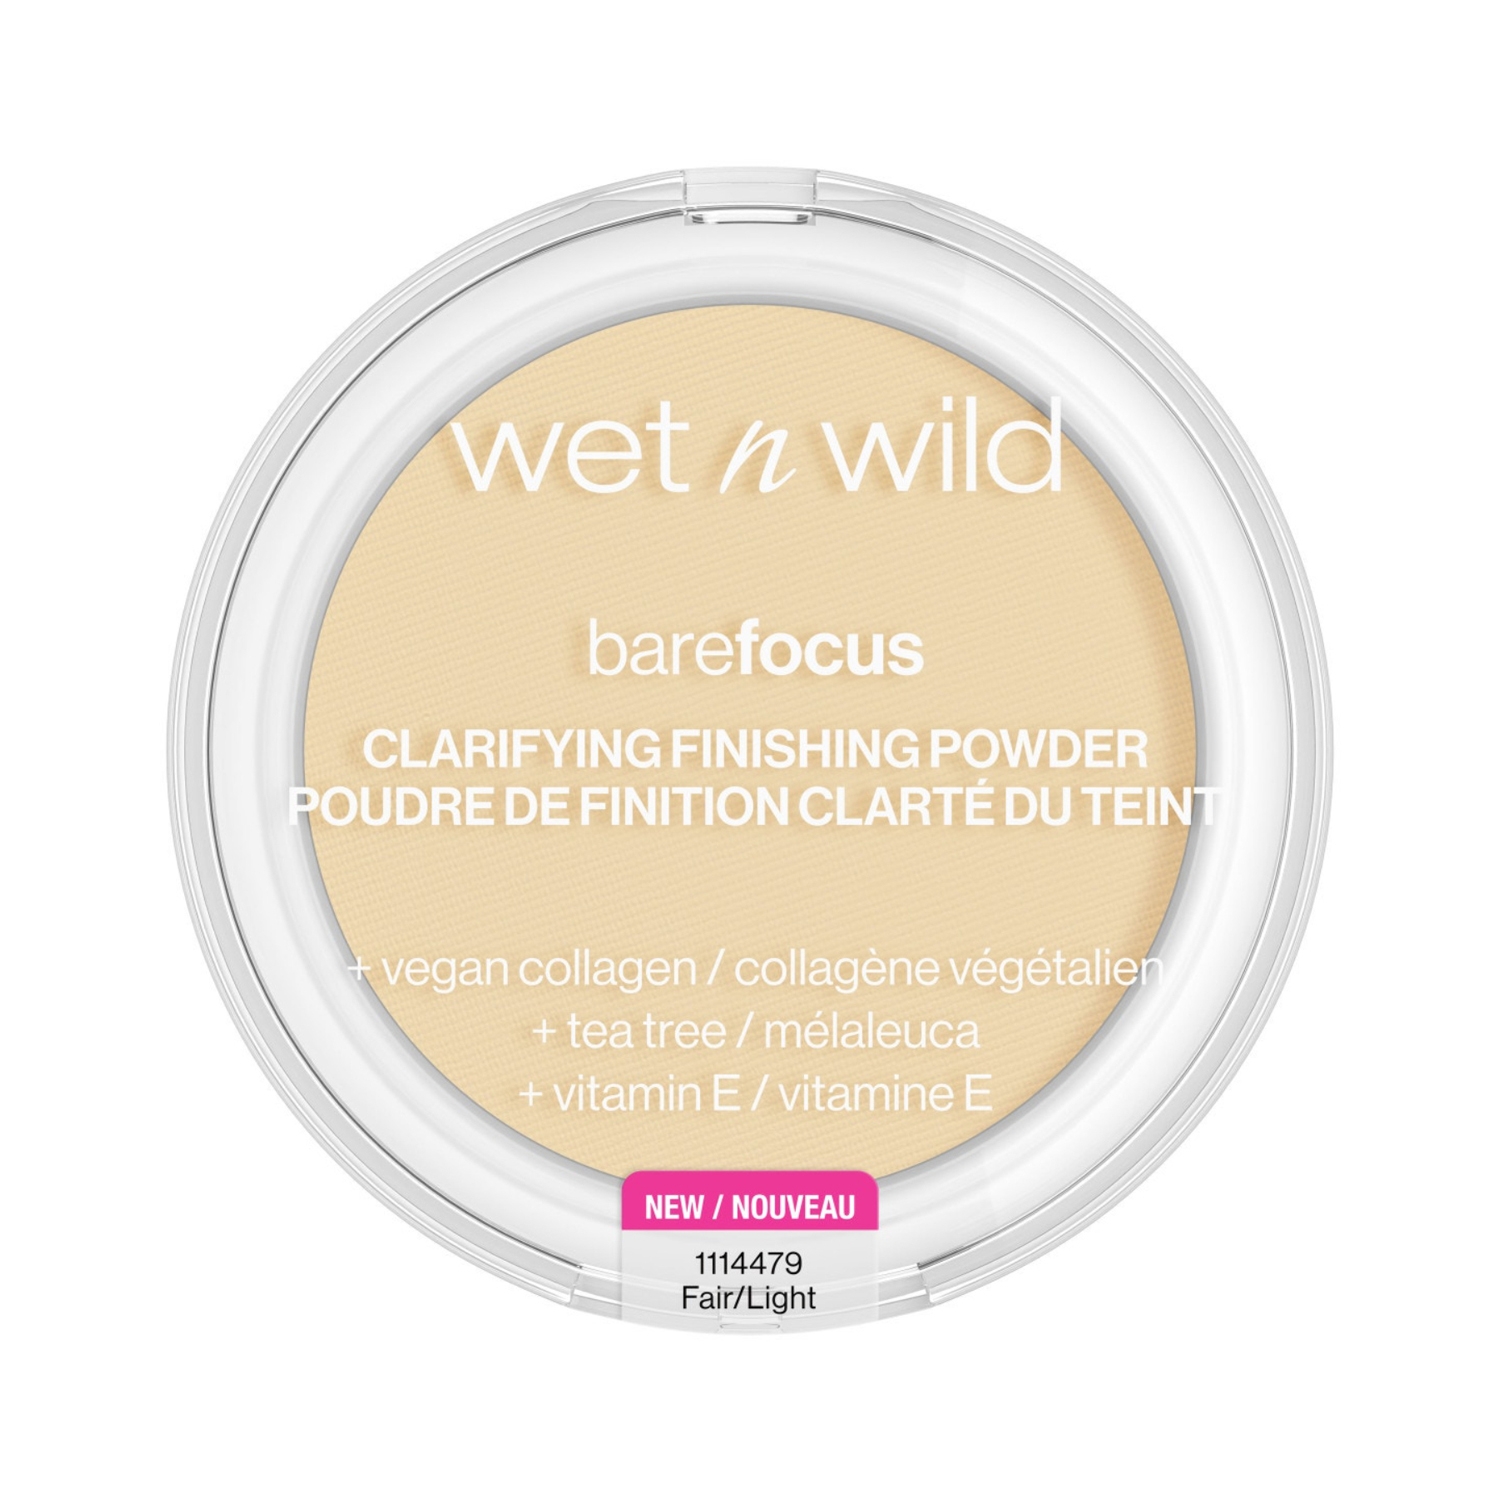 Wet n Wild Bare Focus Clarifying Finishing Powder - Fair/Light (7.8g)